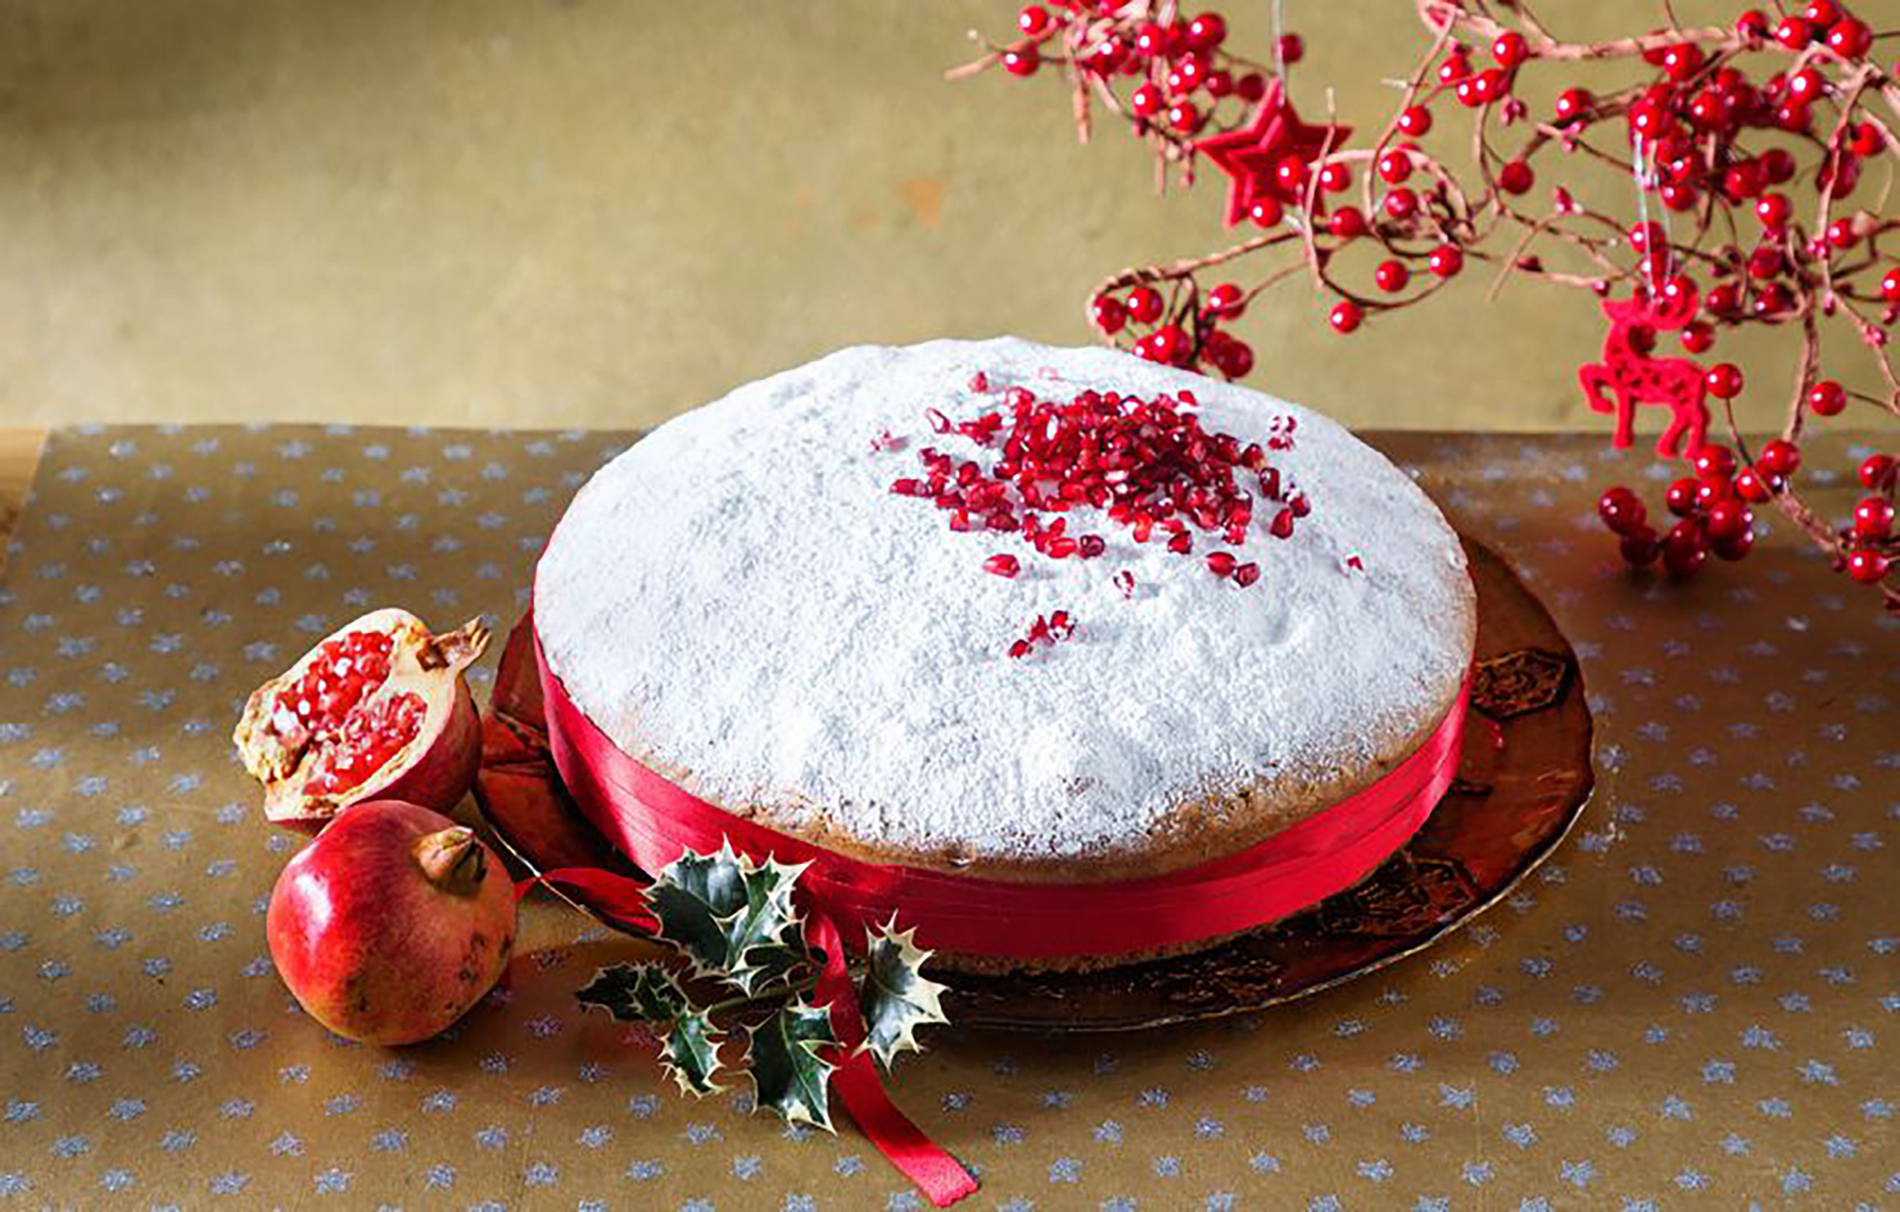 كيف يحتفل اليونانييون برأس السنة, ماعلاقة الرمان والكعكة وتقاليد أخرى